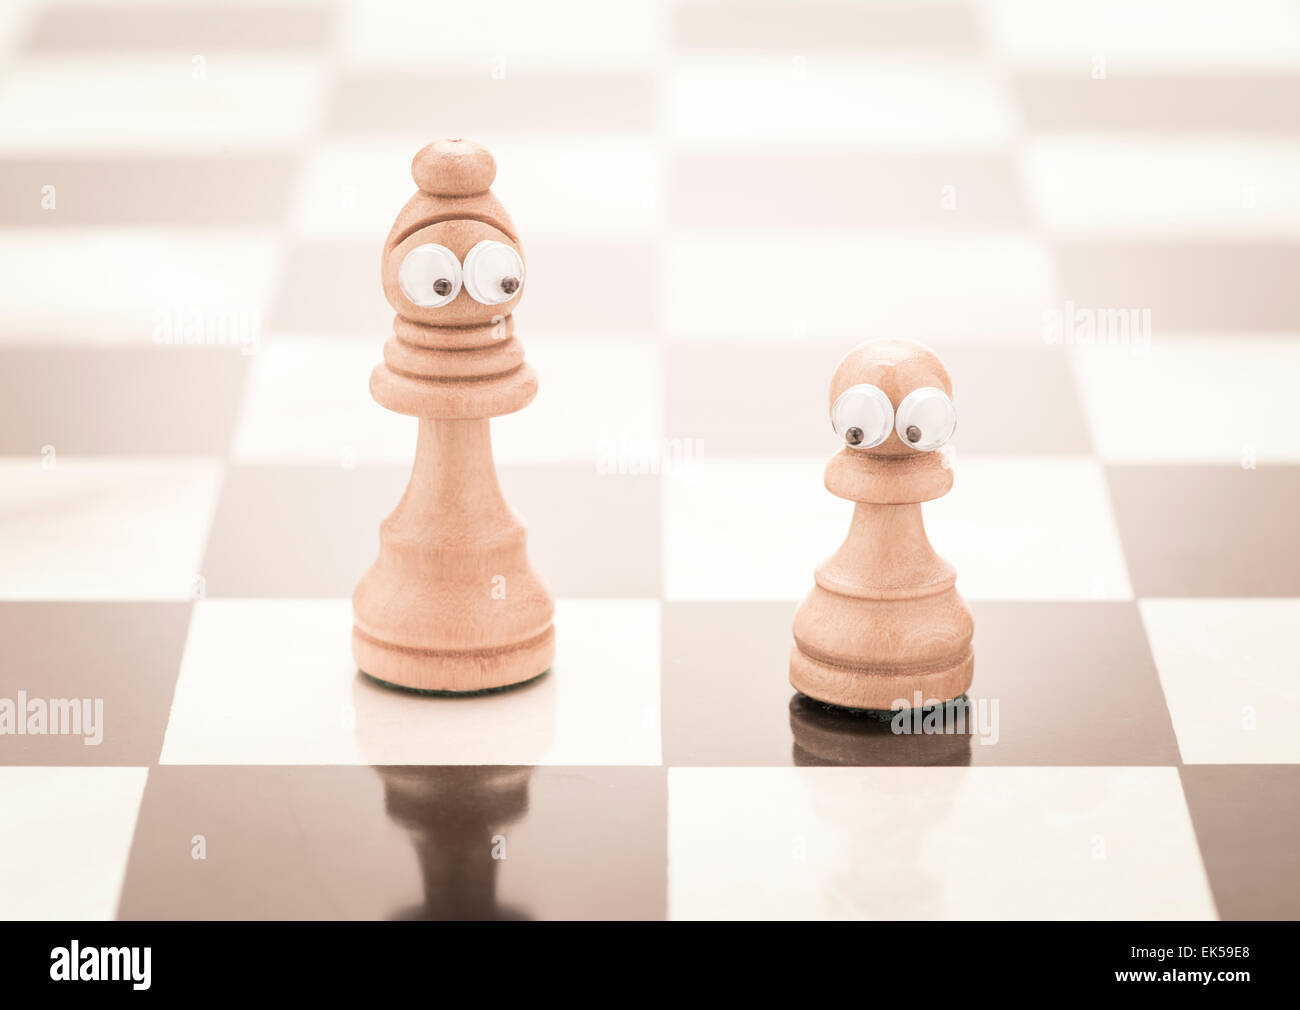 Pezzi di scacchi con gli occhi. Immagine concettuale della genitorialità come madre single. Foto Stock